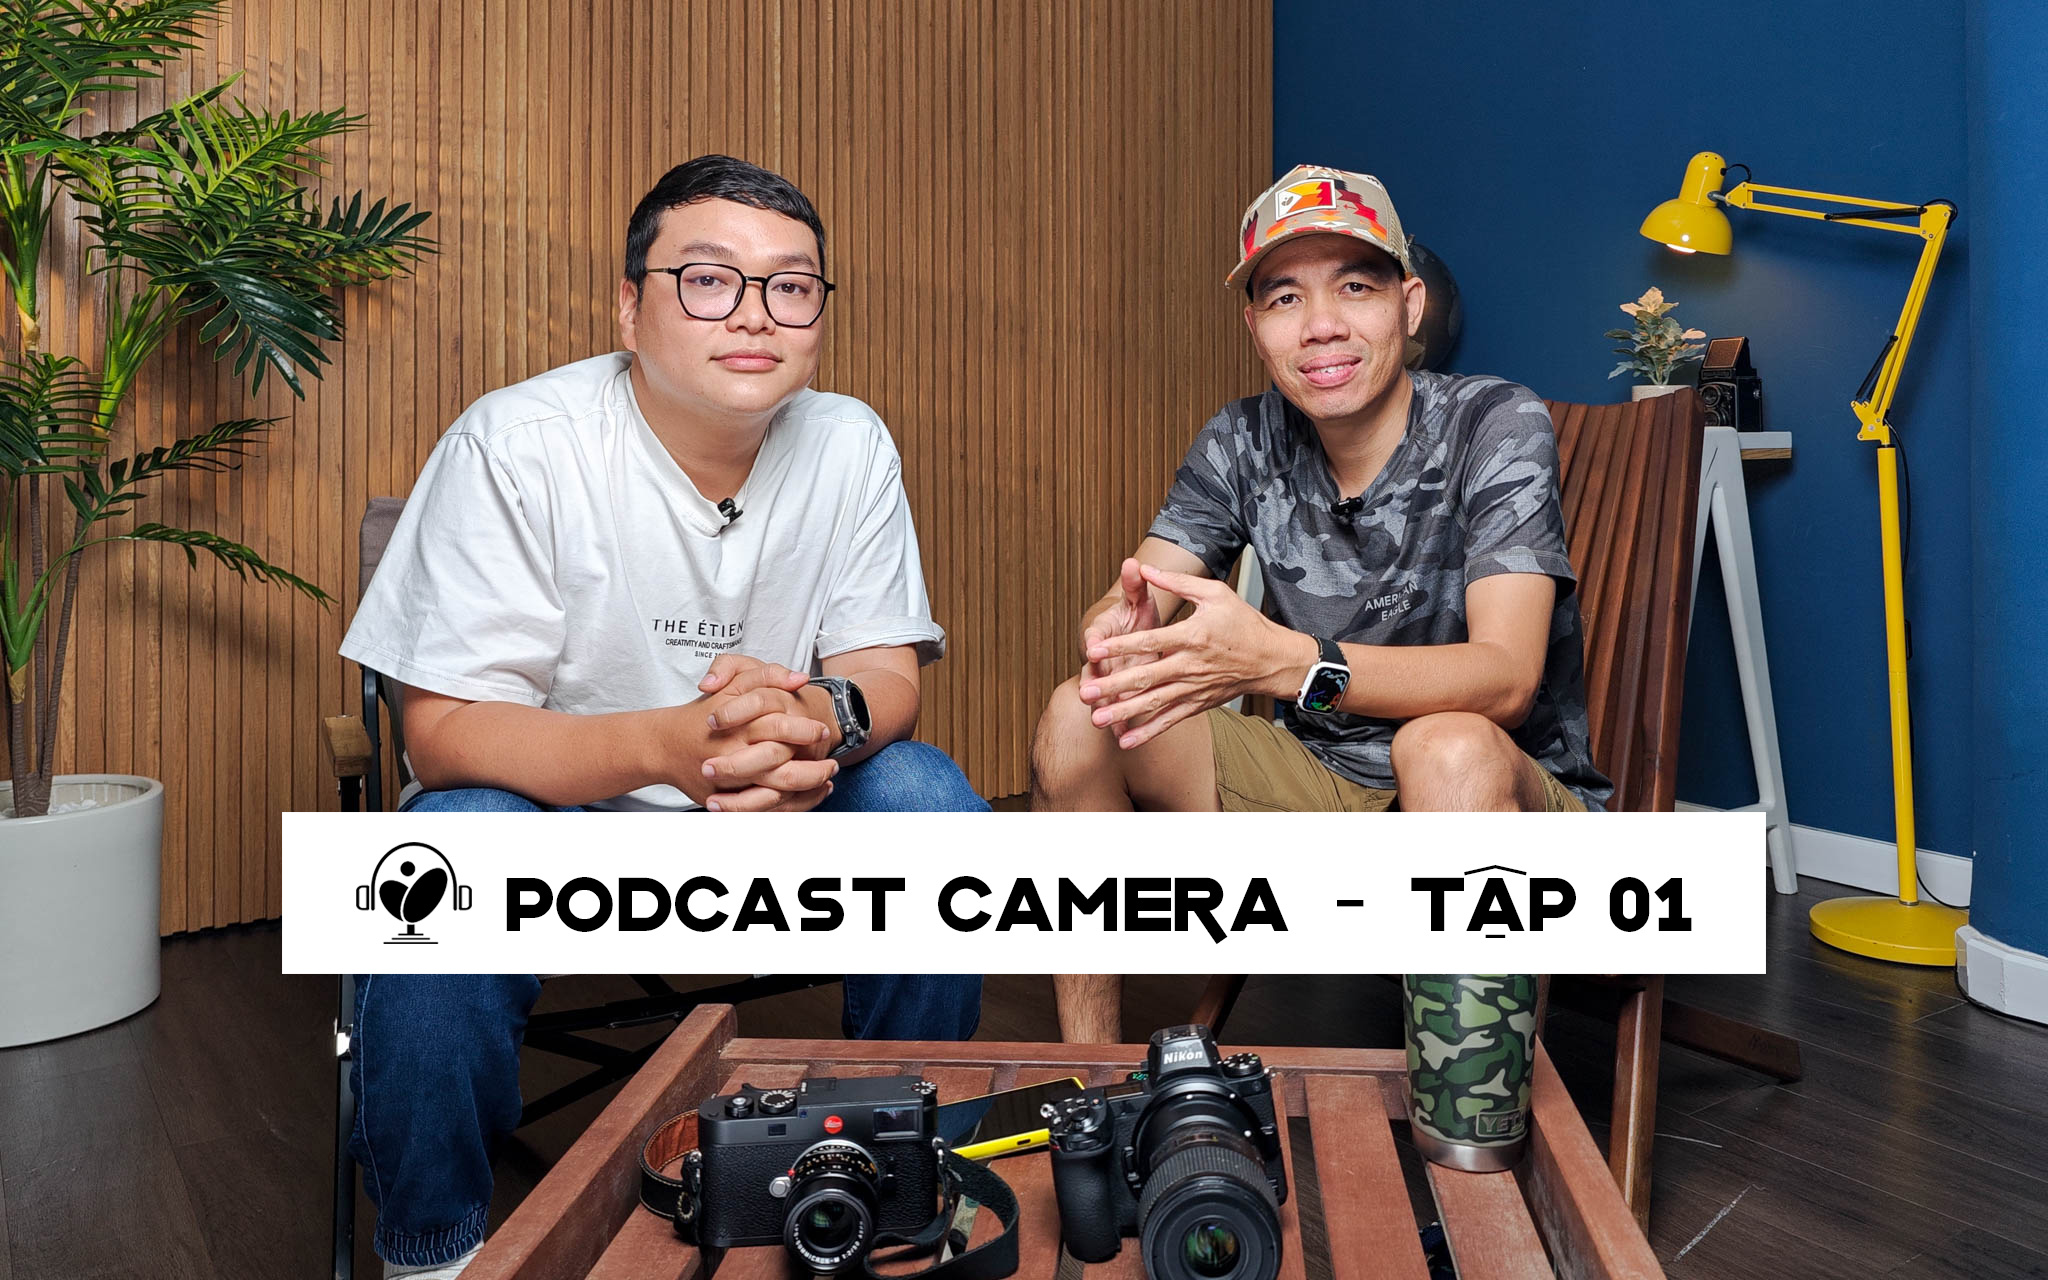 Podcast camera 01: Cuhiep kể về chuyện máy ảnh